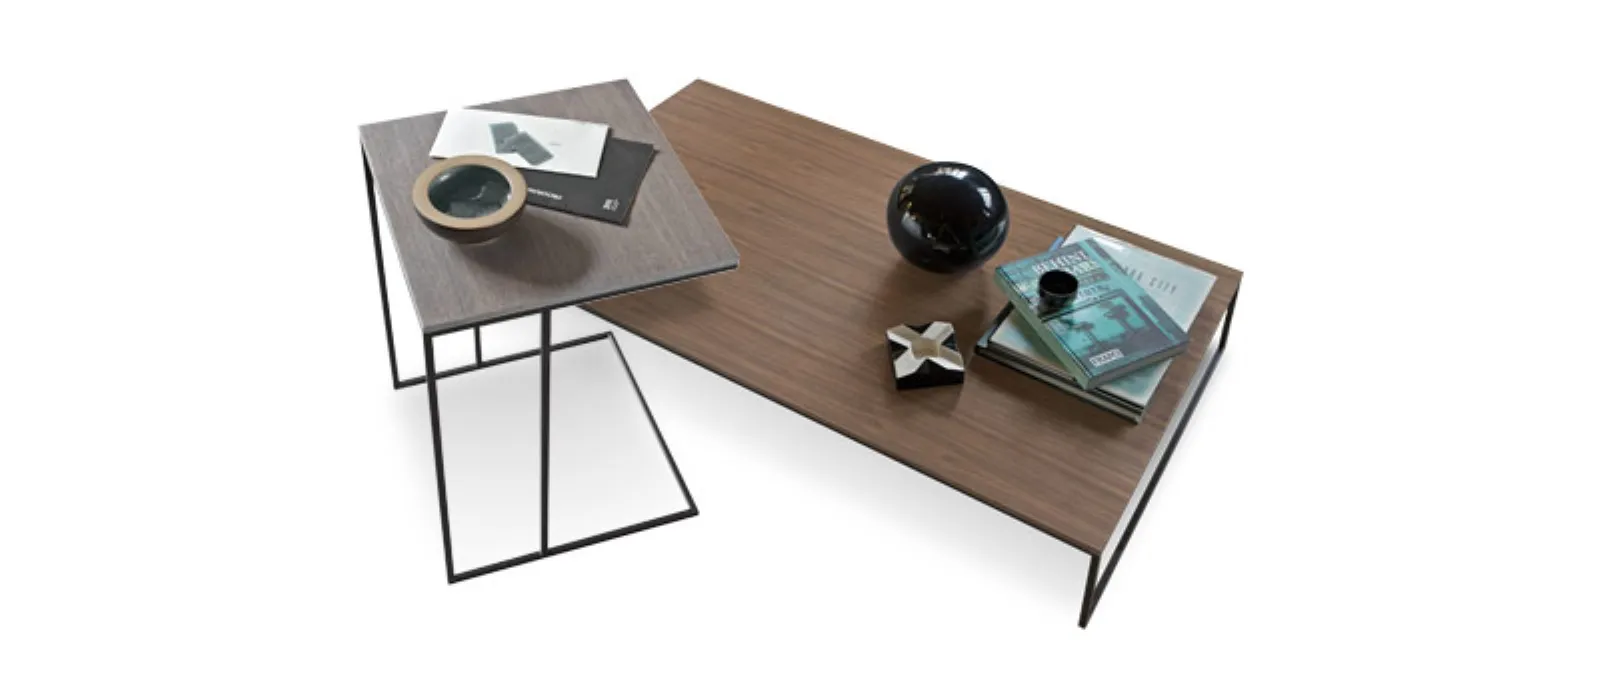 Nexus trendy coffee table